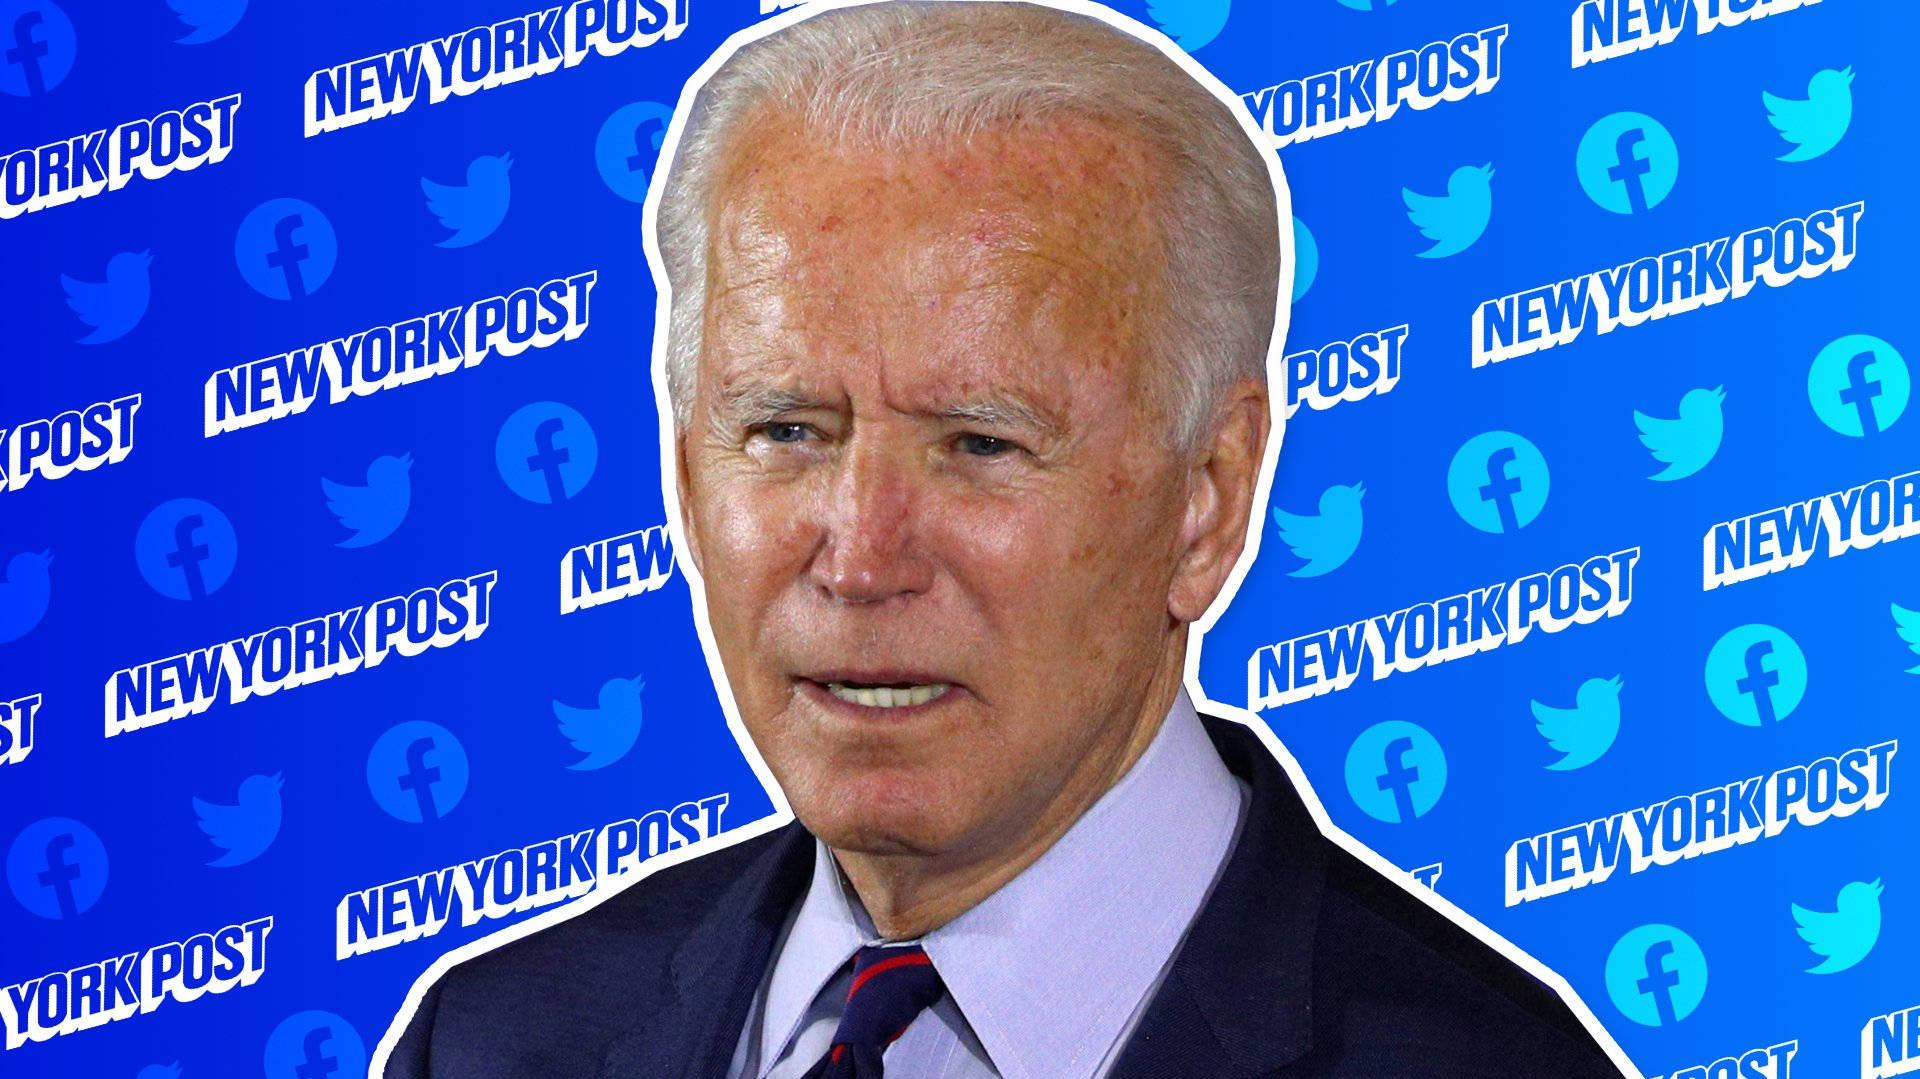 Download Joe Biden New York Post Wallpaper